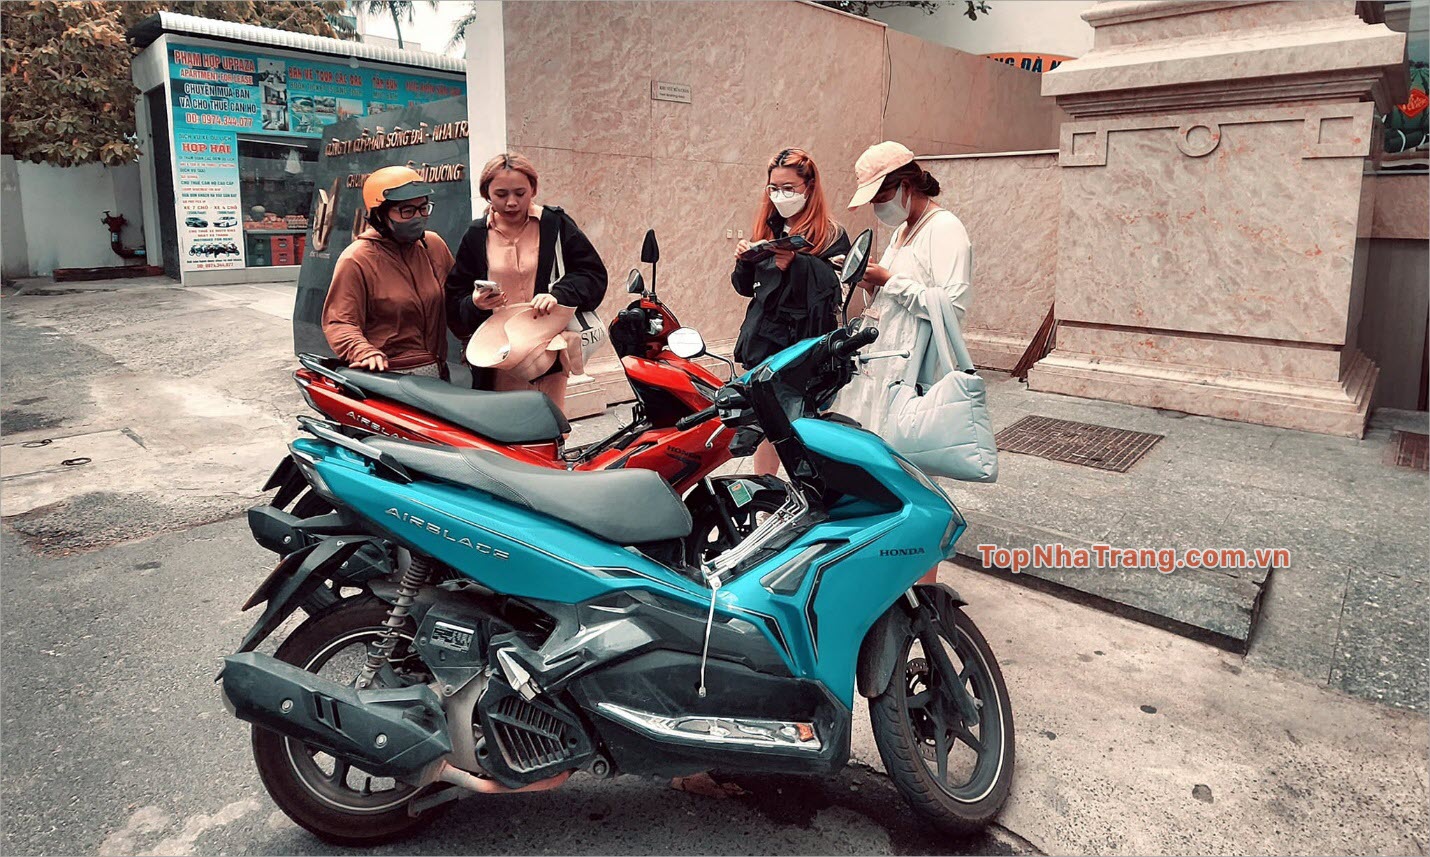 MOTOBIKE  RENTAL – Giao xe tận nhà tại Nha Trang